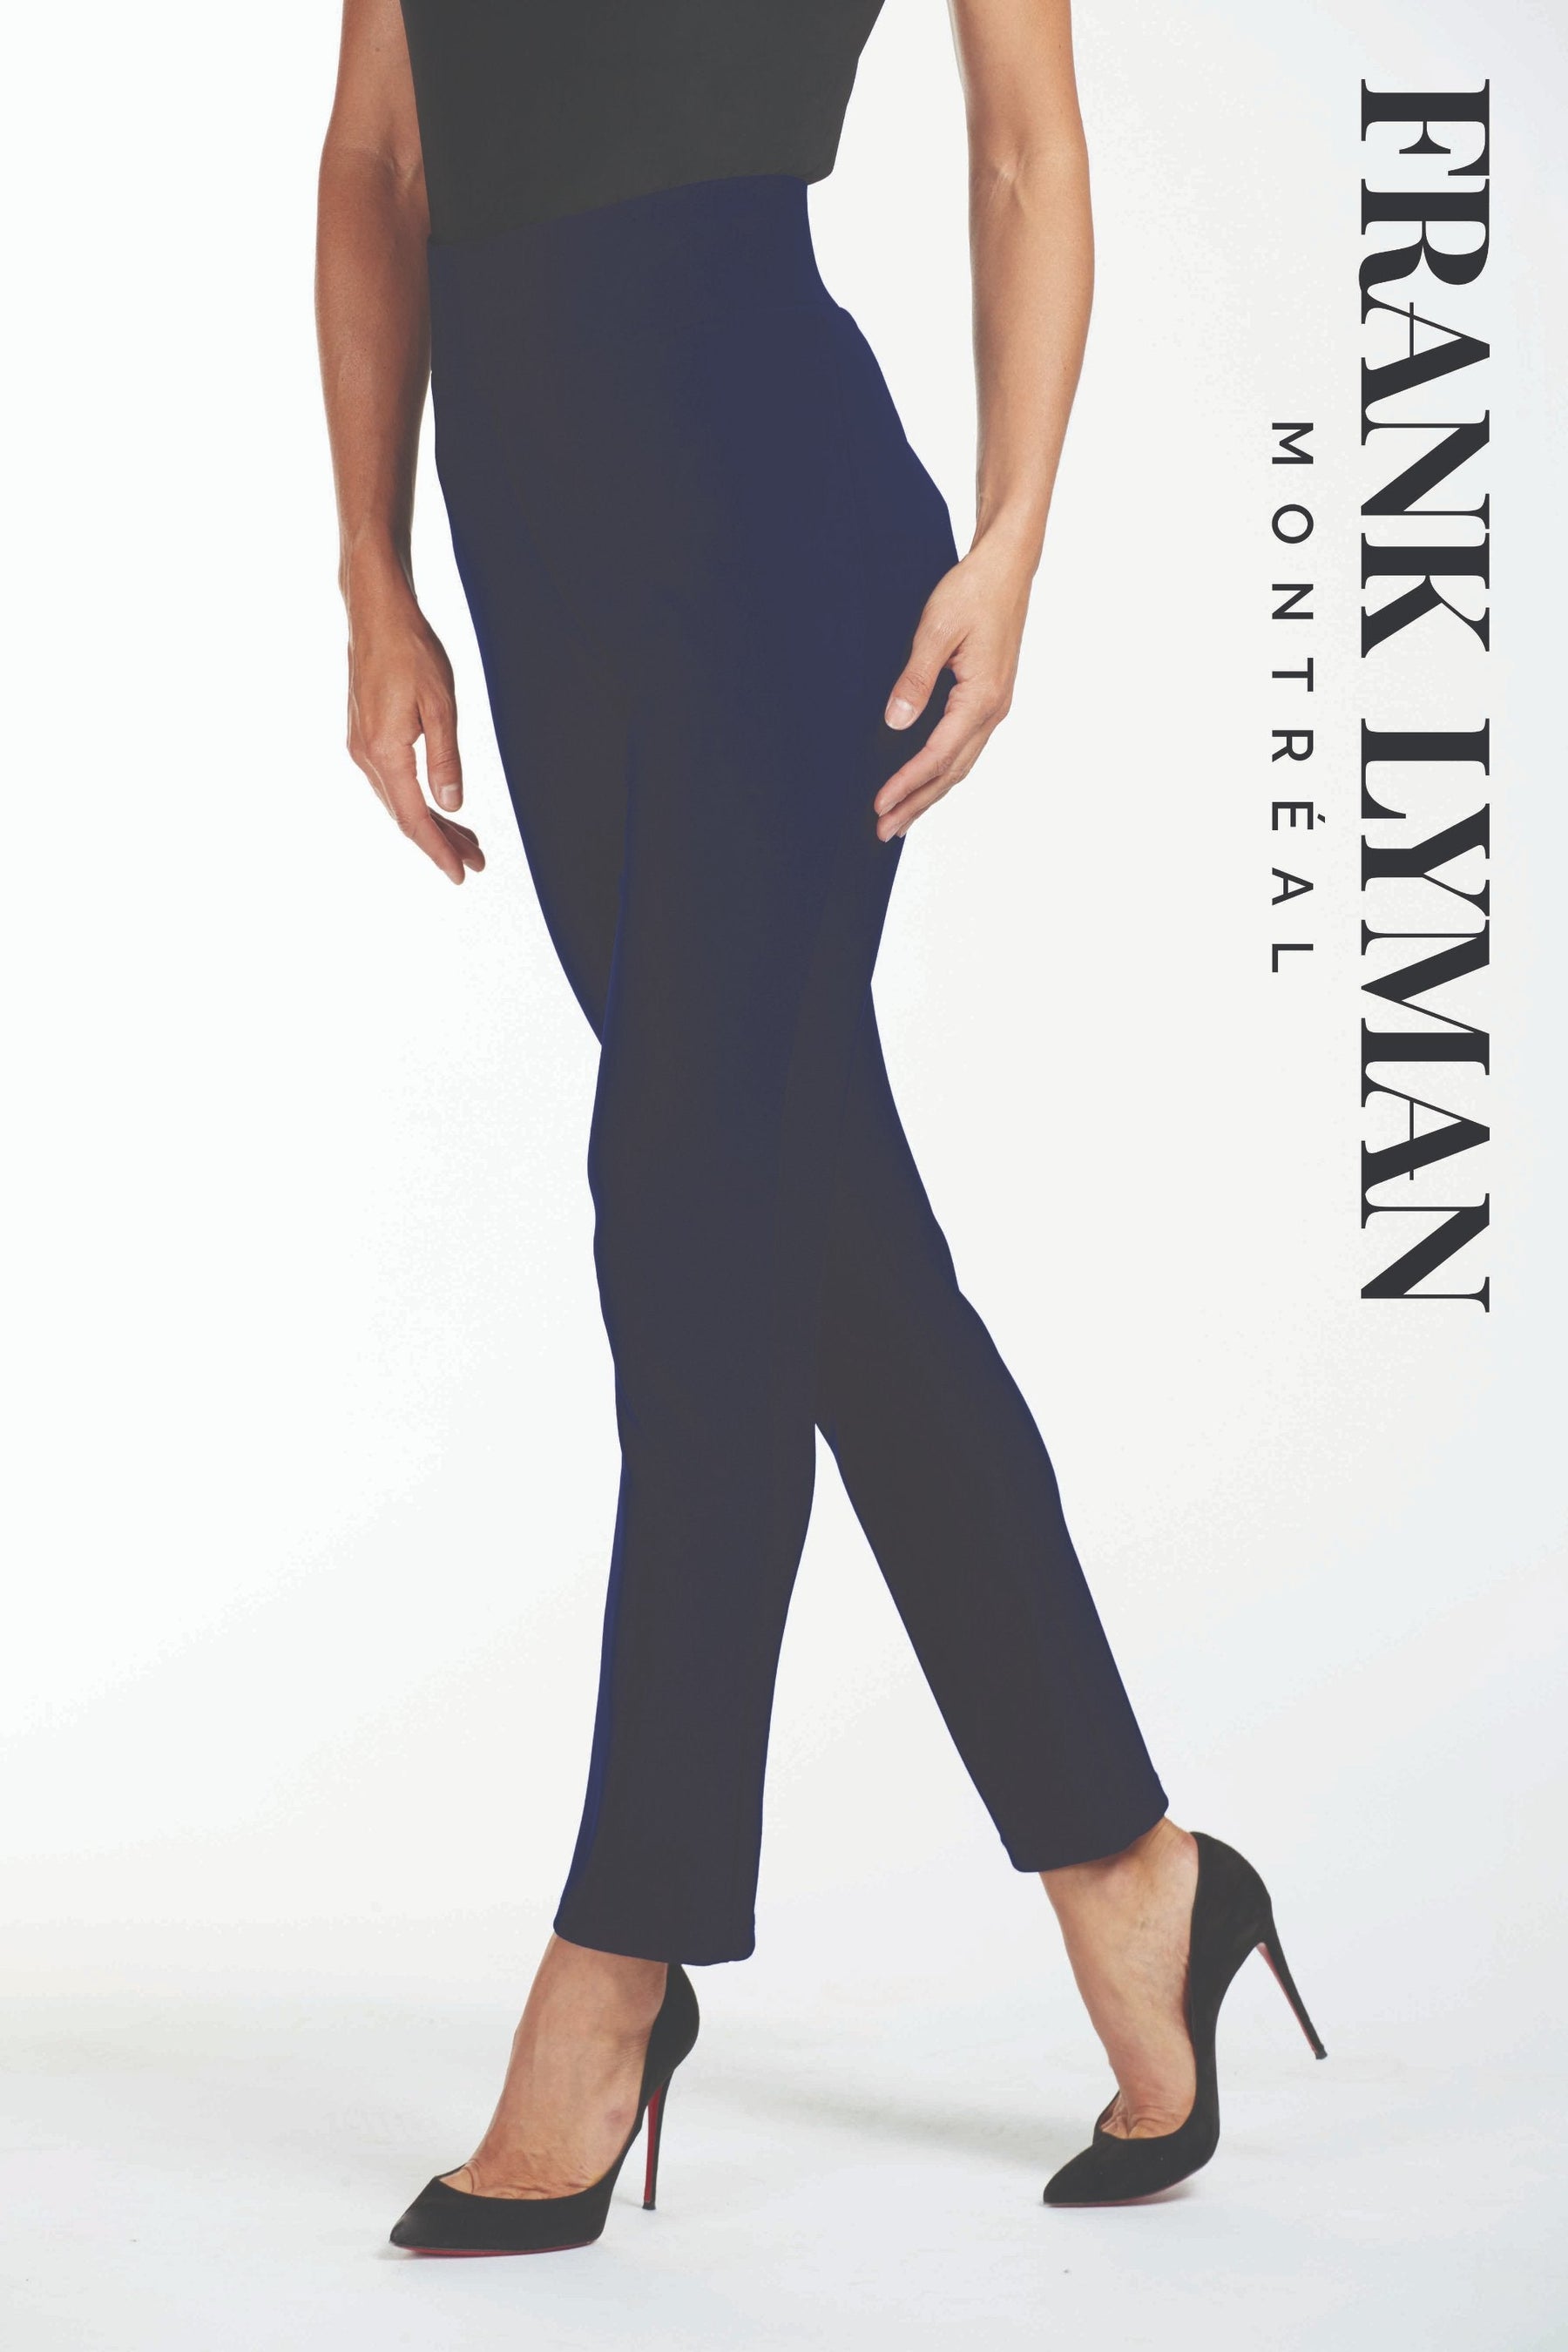 Pantalon en Knit Frank Lyman - 082 INDIGO - Boutique Vvög, référence en mode pour homme et femme